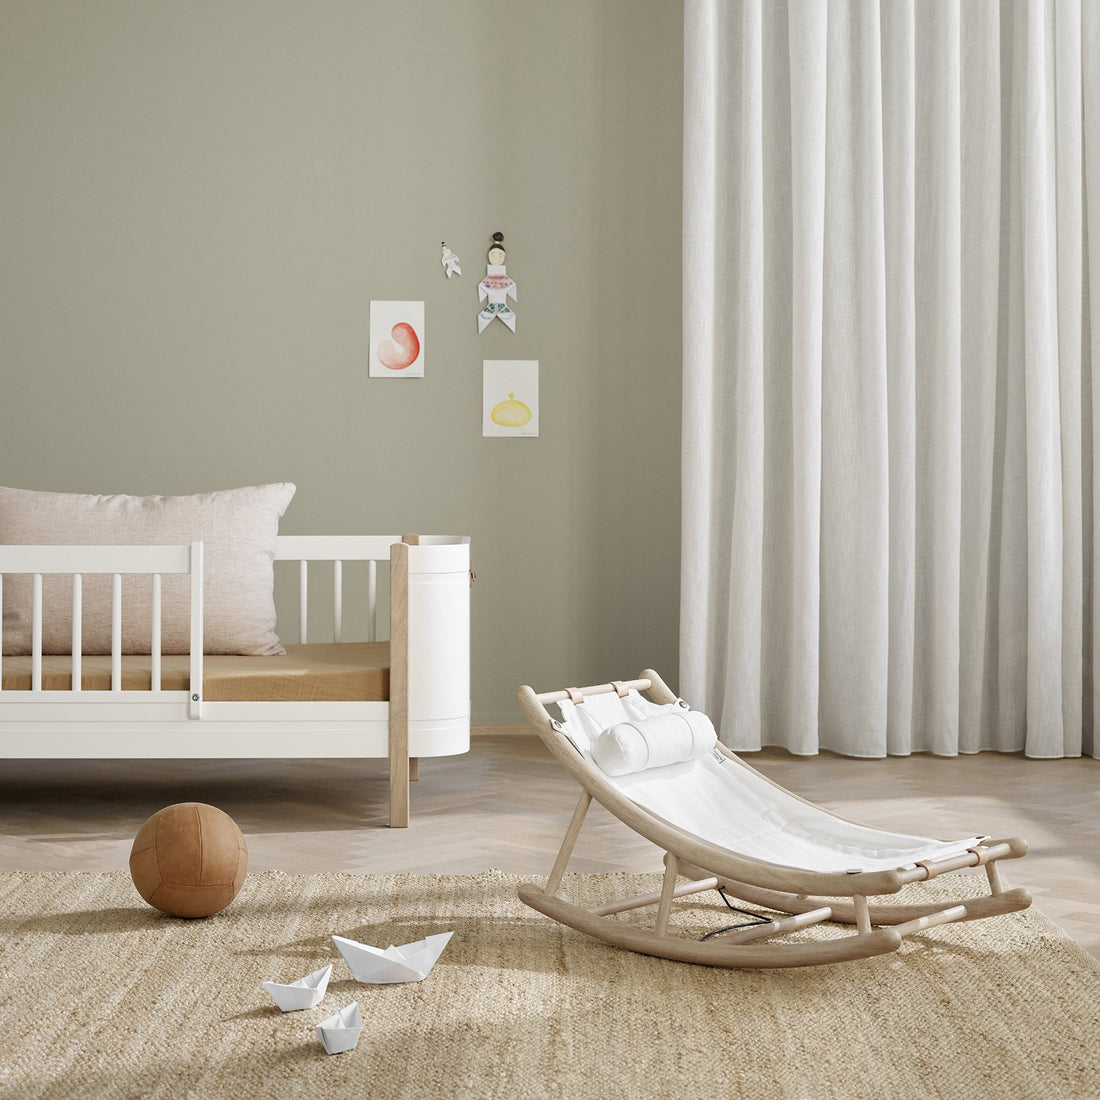 oliver-furniture-wood-toddler-rocker-oak-white- (2)